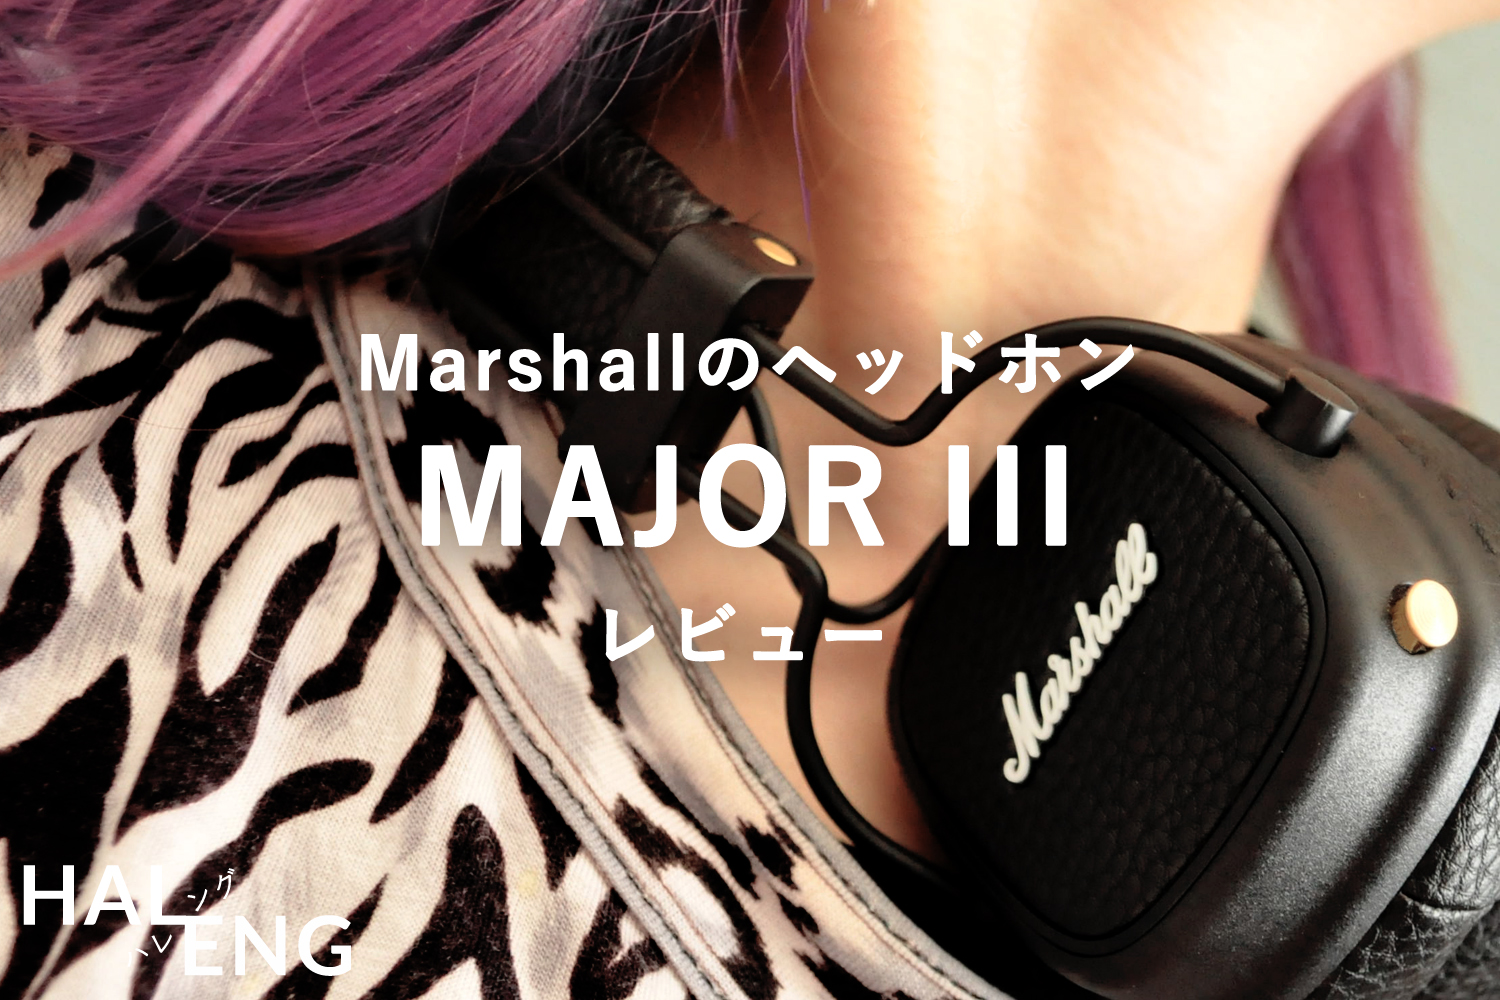 アウトレット値段 Marshall Ii MAJOR ブラック BLUETOOTH III ヘッドフォン